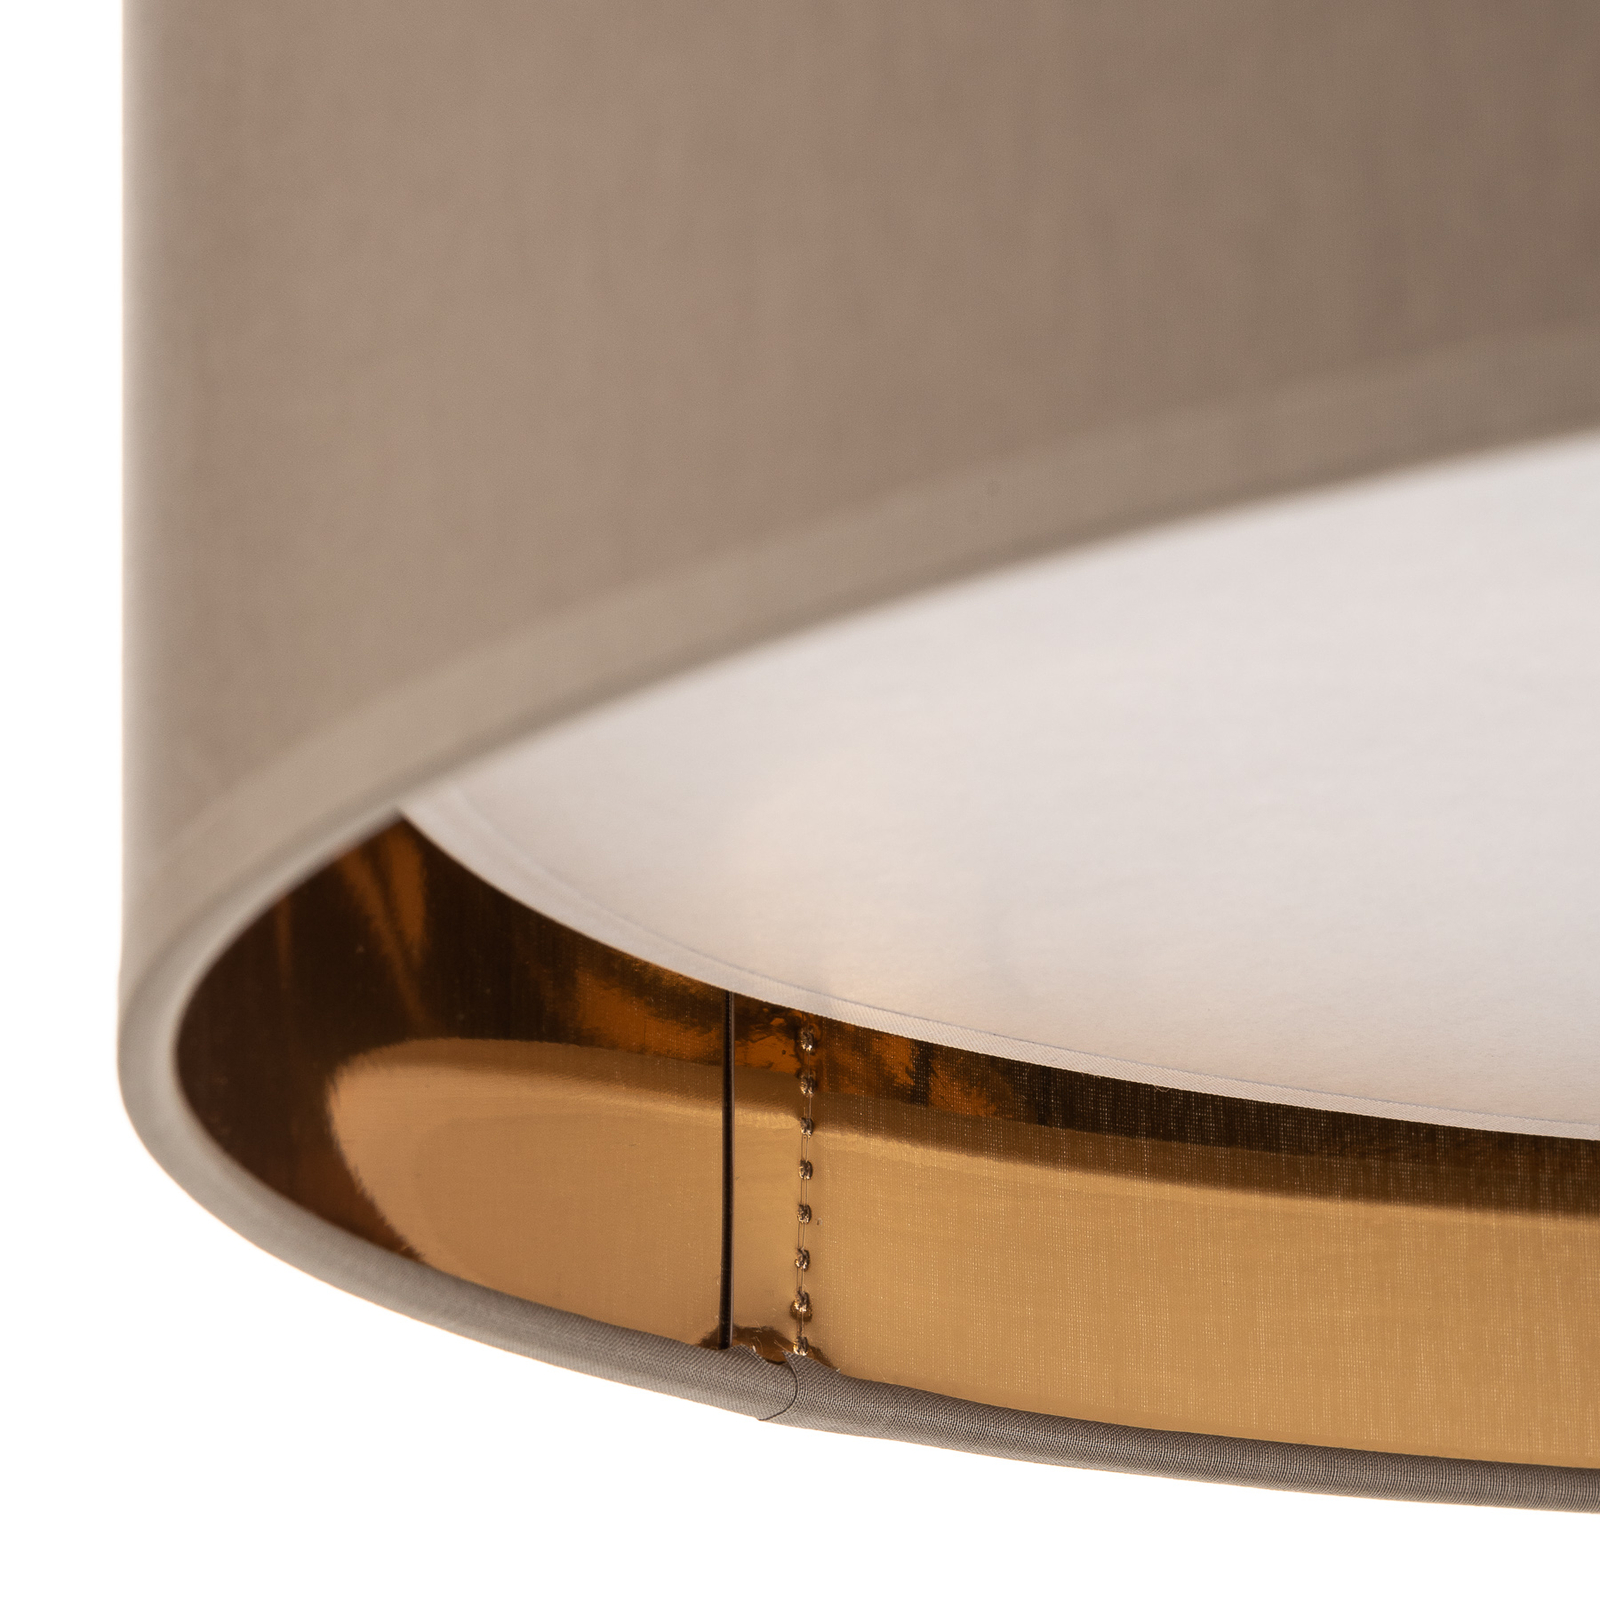 Bilbao loftlampe, grå/guld, Ø 45 cm